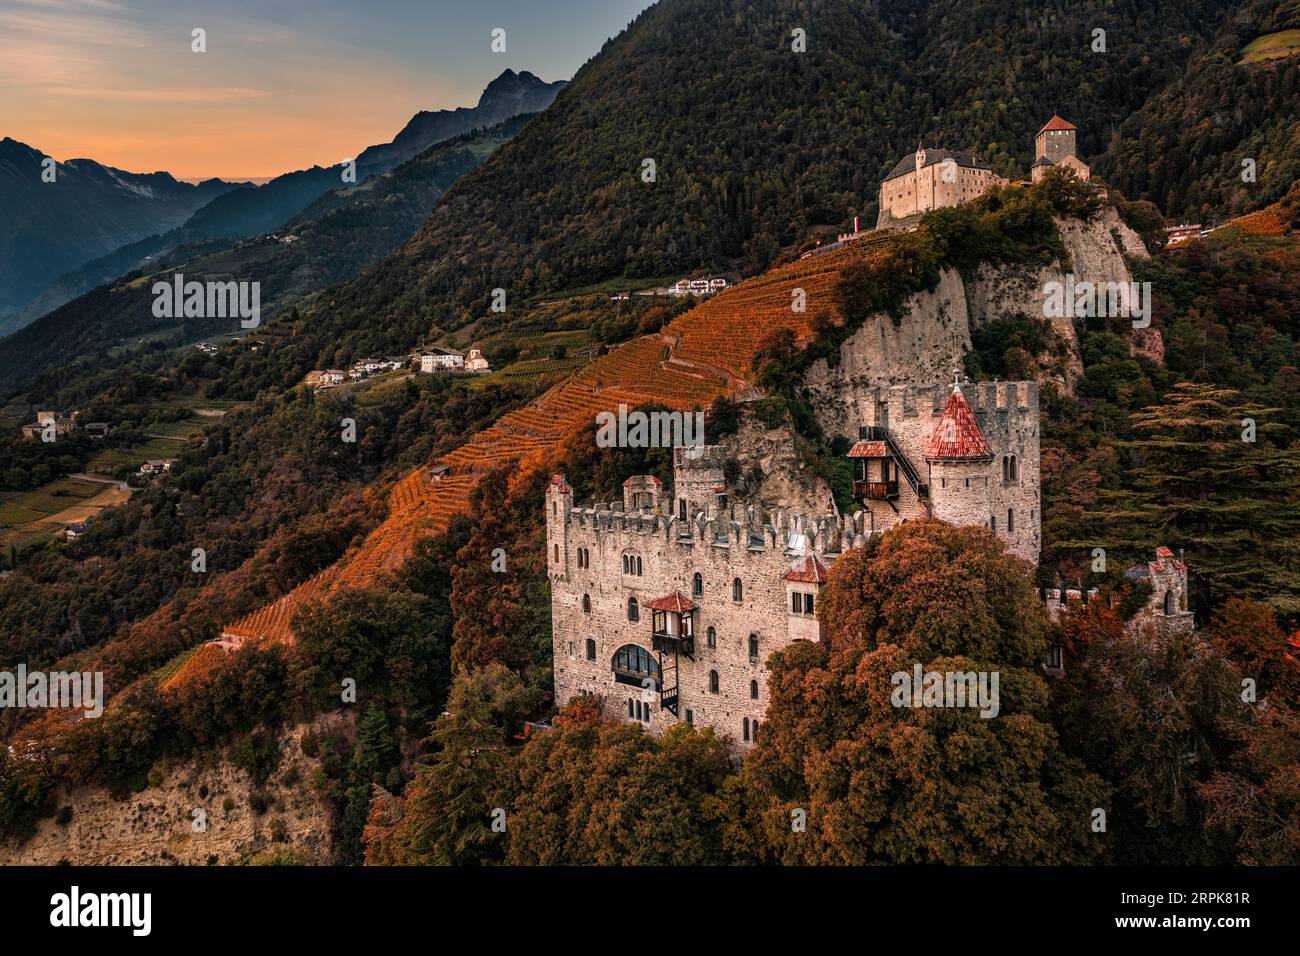 Merano, Italien - Blick von der Luft auf das berühmte Schloss Brunnenburg mit Schloss Tirol im Hintergrund in den italienischen Dolomiten und buntem Sonnenuntergangshimmel im Herbst Stockfoto